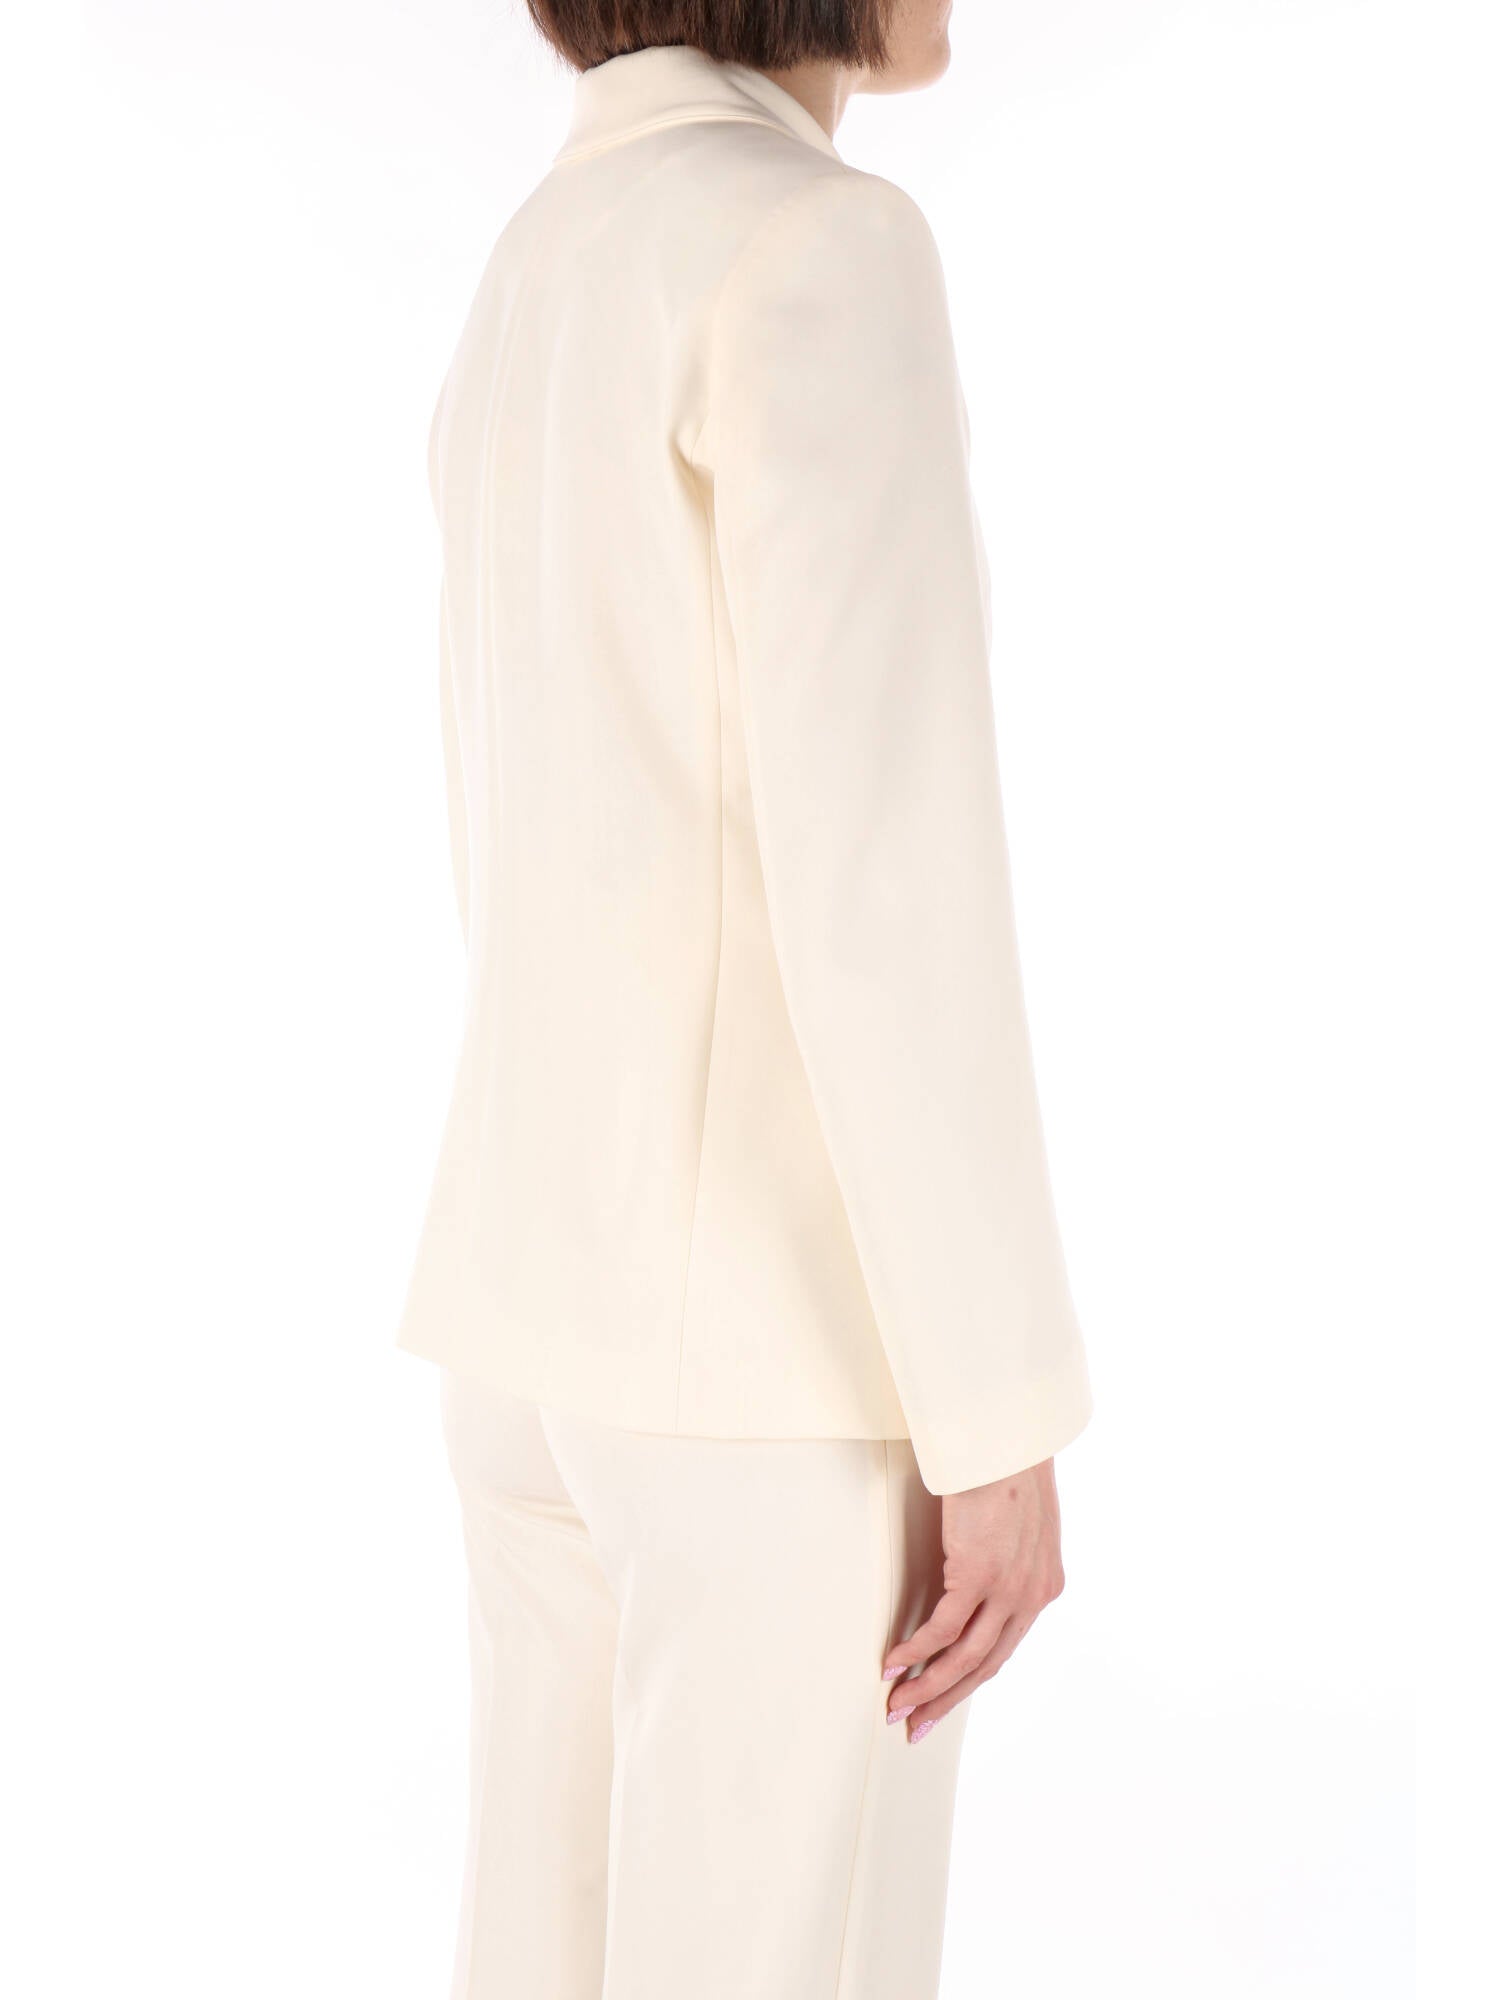 Kocca giacca classica doppiopetto bianca